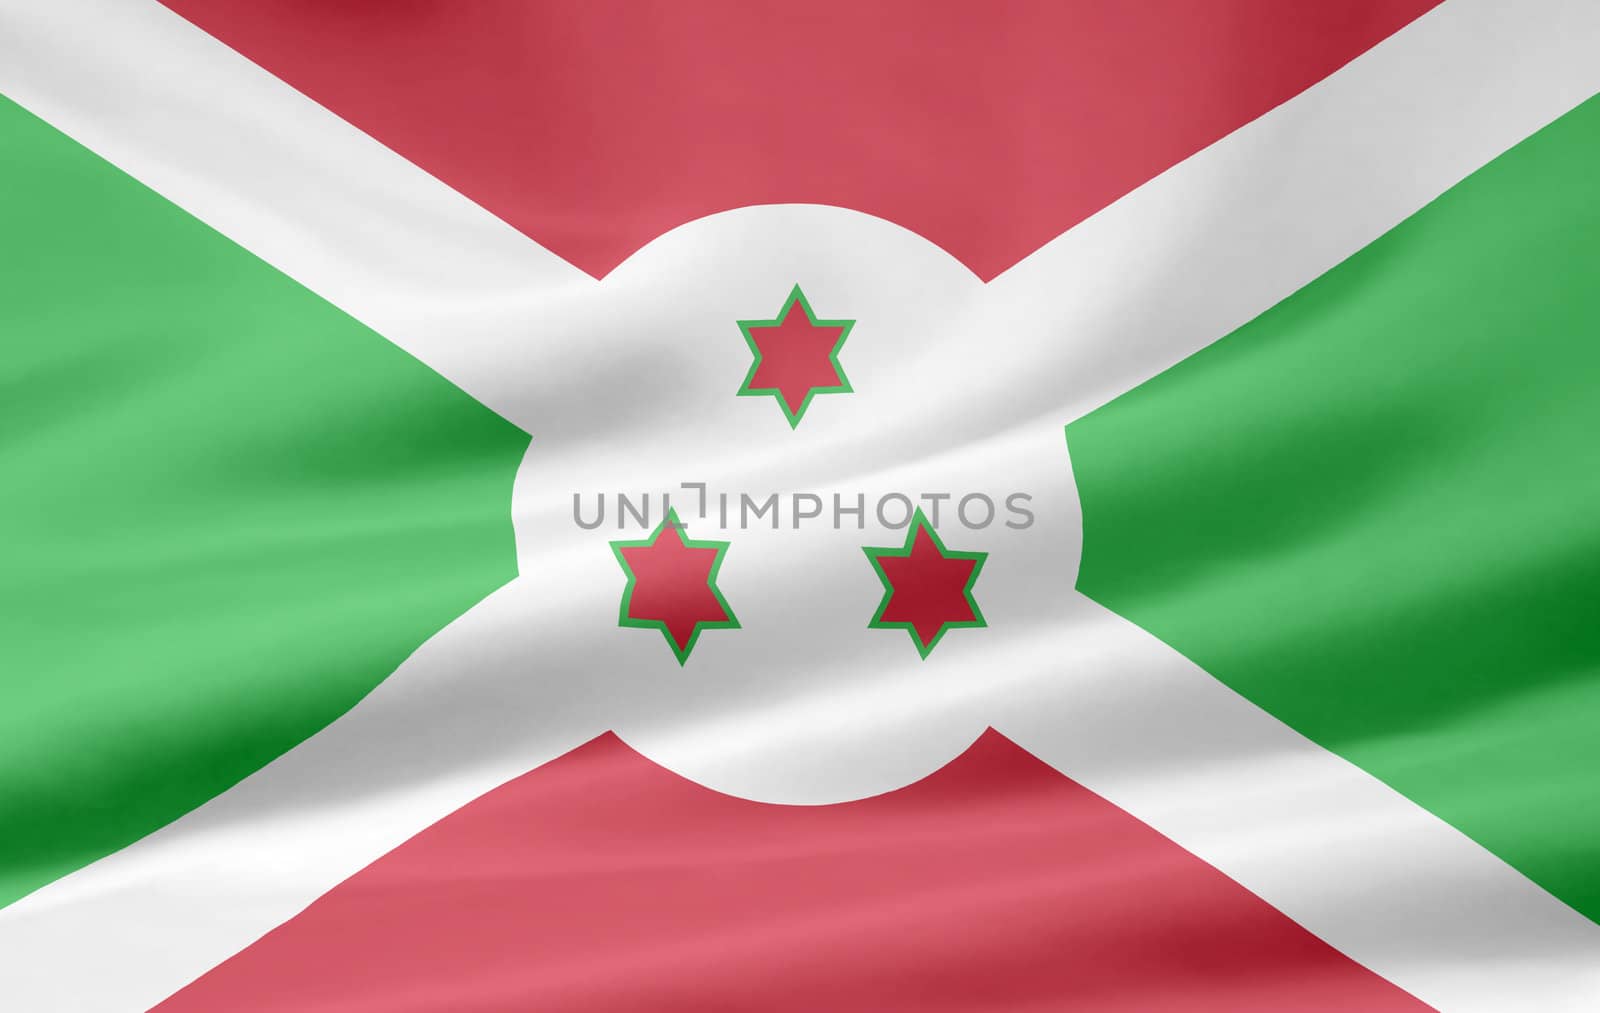 High resolution flag of Burundi